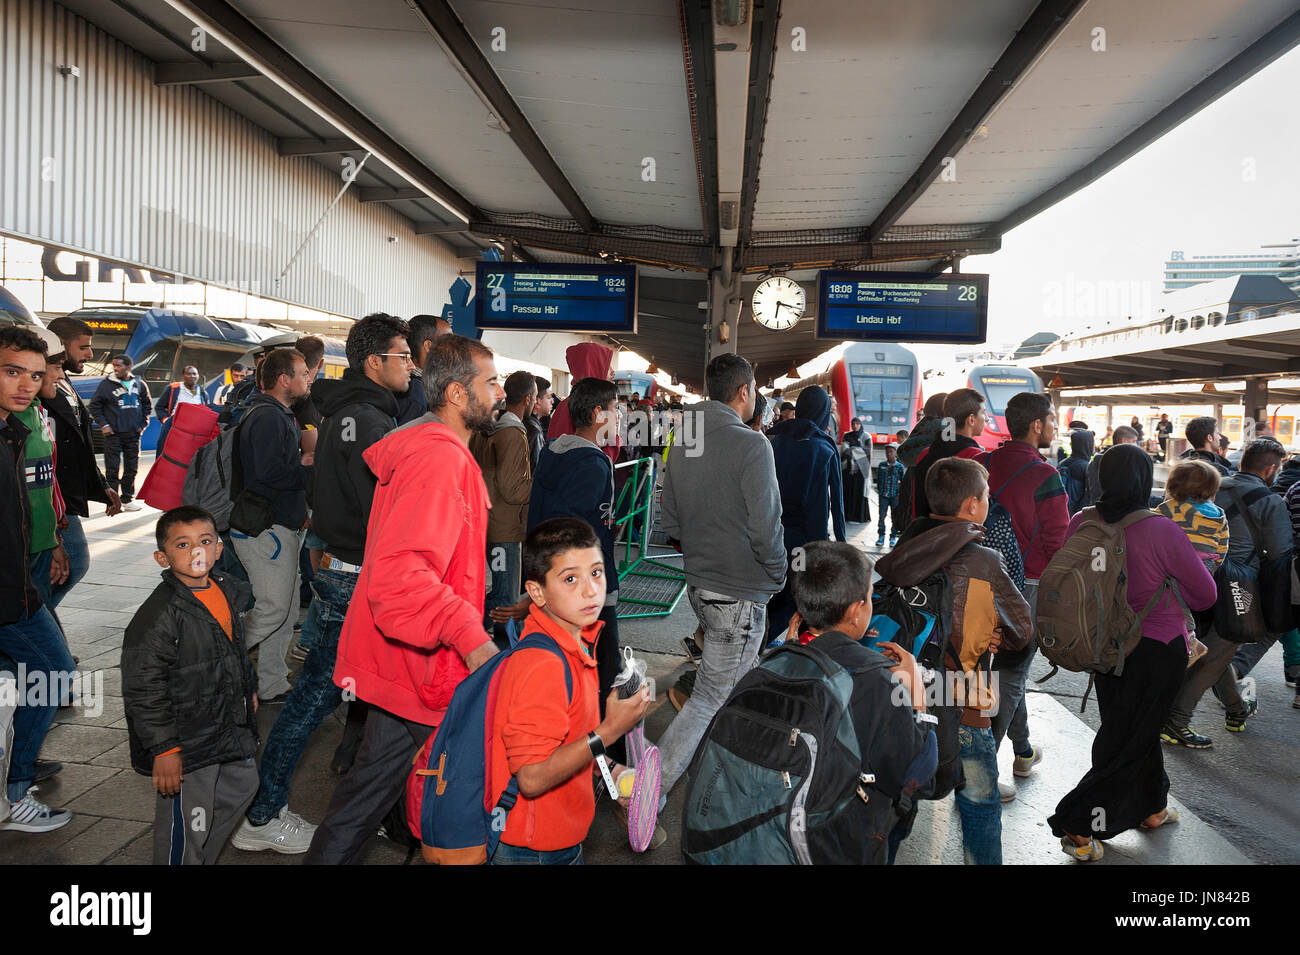 Monaco di Baviera, Germania - Settembre 10th, 2015: i rifugiati dalla Siria, Afghanistan e dei paesi balcanici che arrivano a Monaco di Baviera per chiedere asilo in Germania. Foto Stock